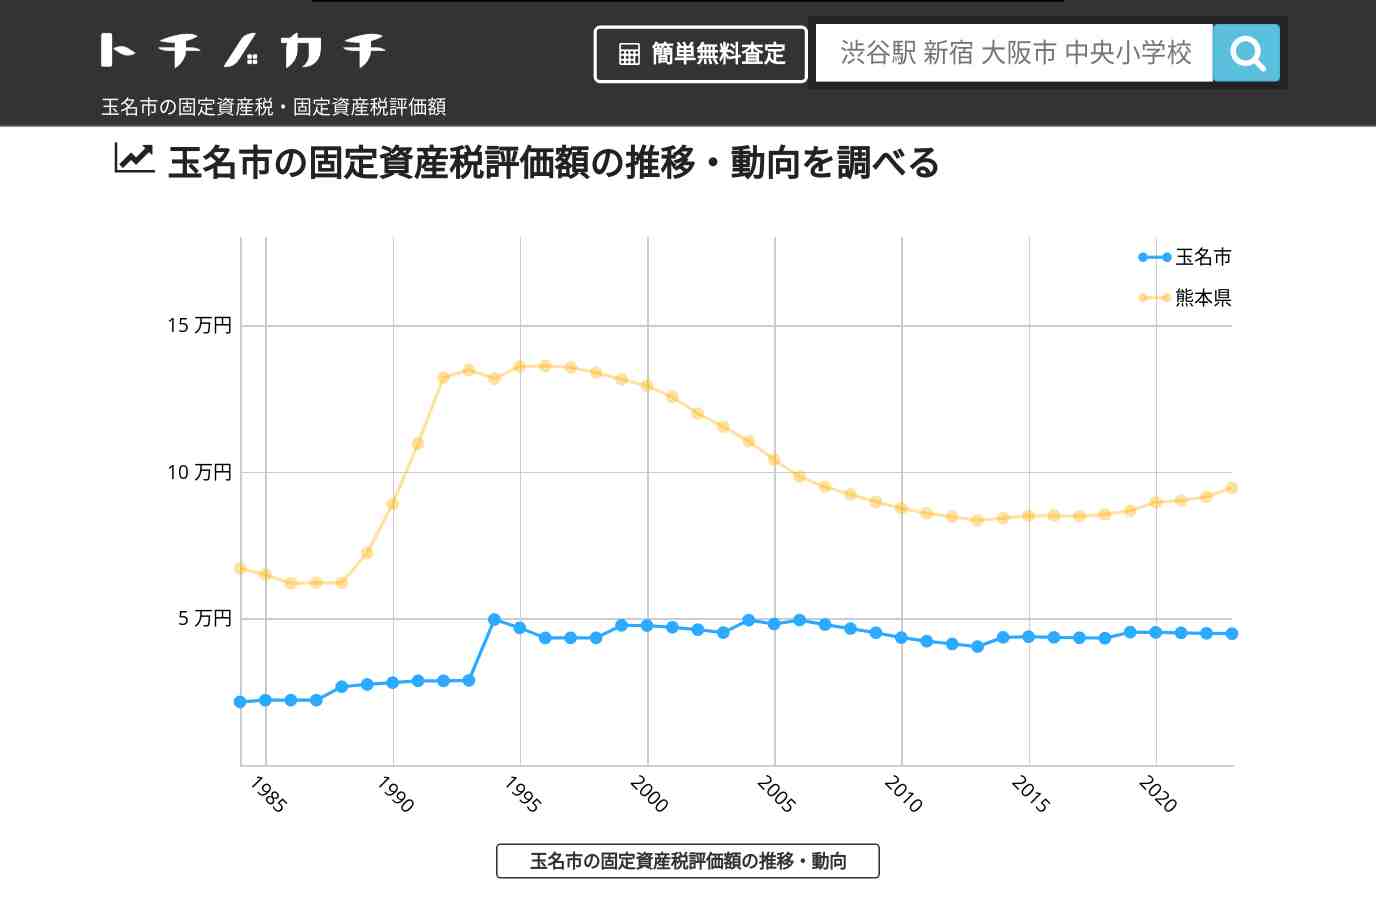 天水中学校(熊本県 玉名市)周辺の固定資産税・固定資産税評価額 | トチノカチ